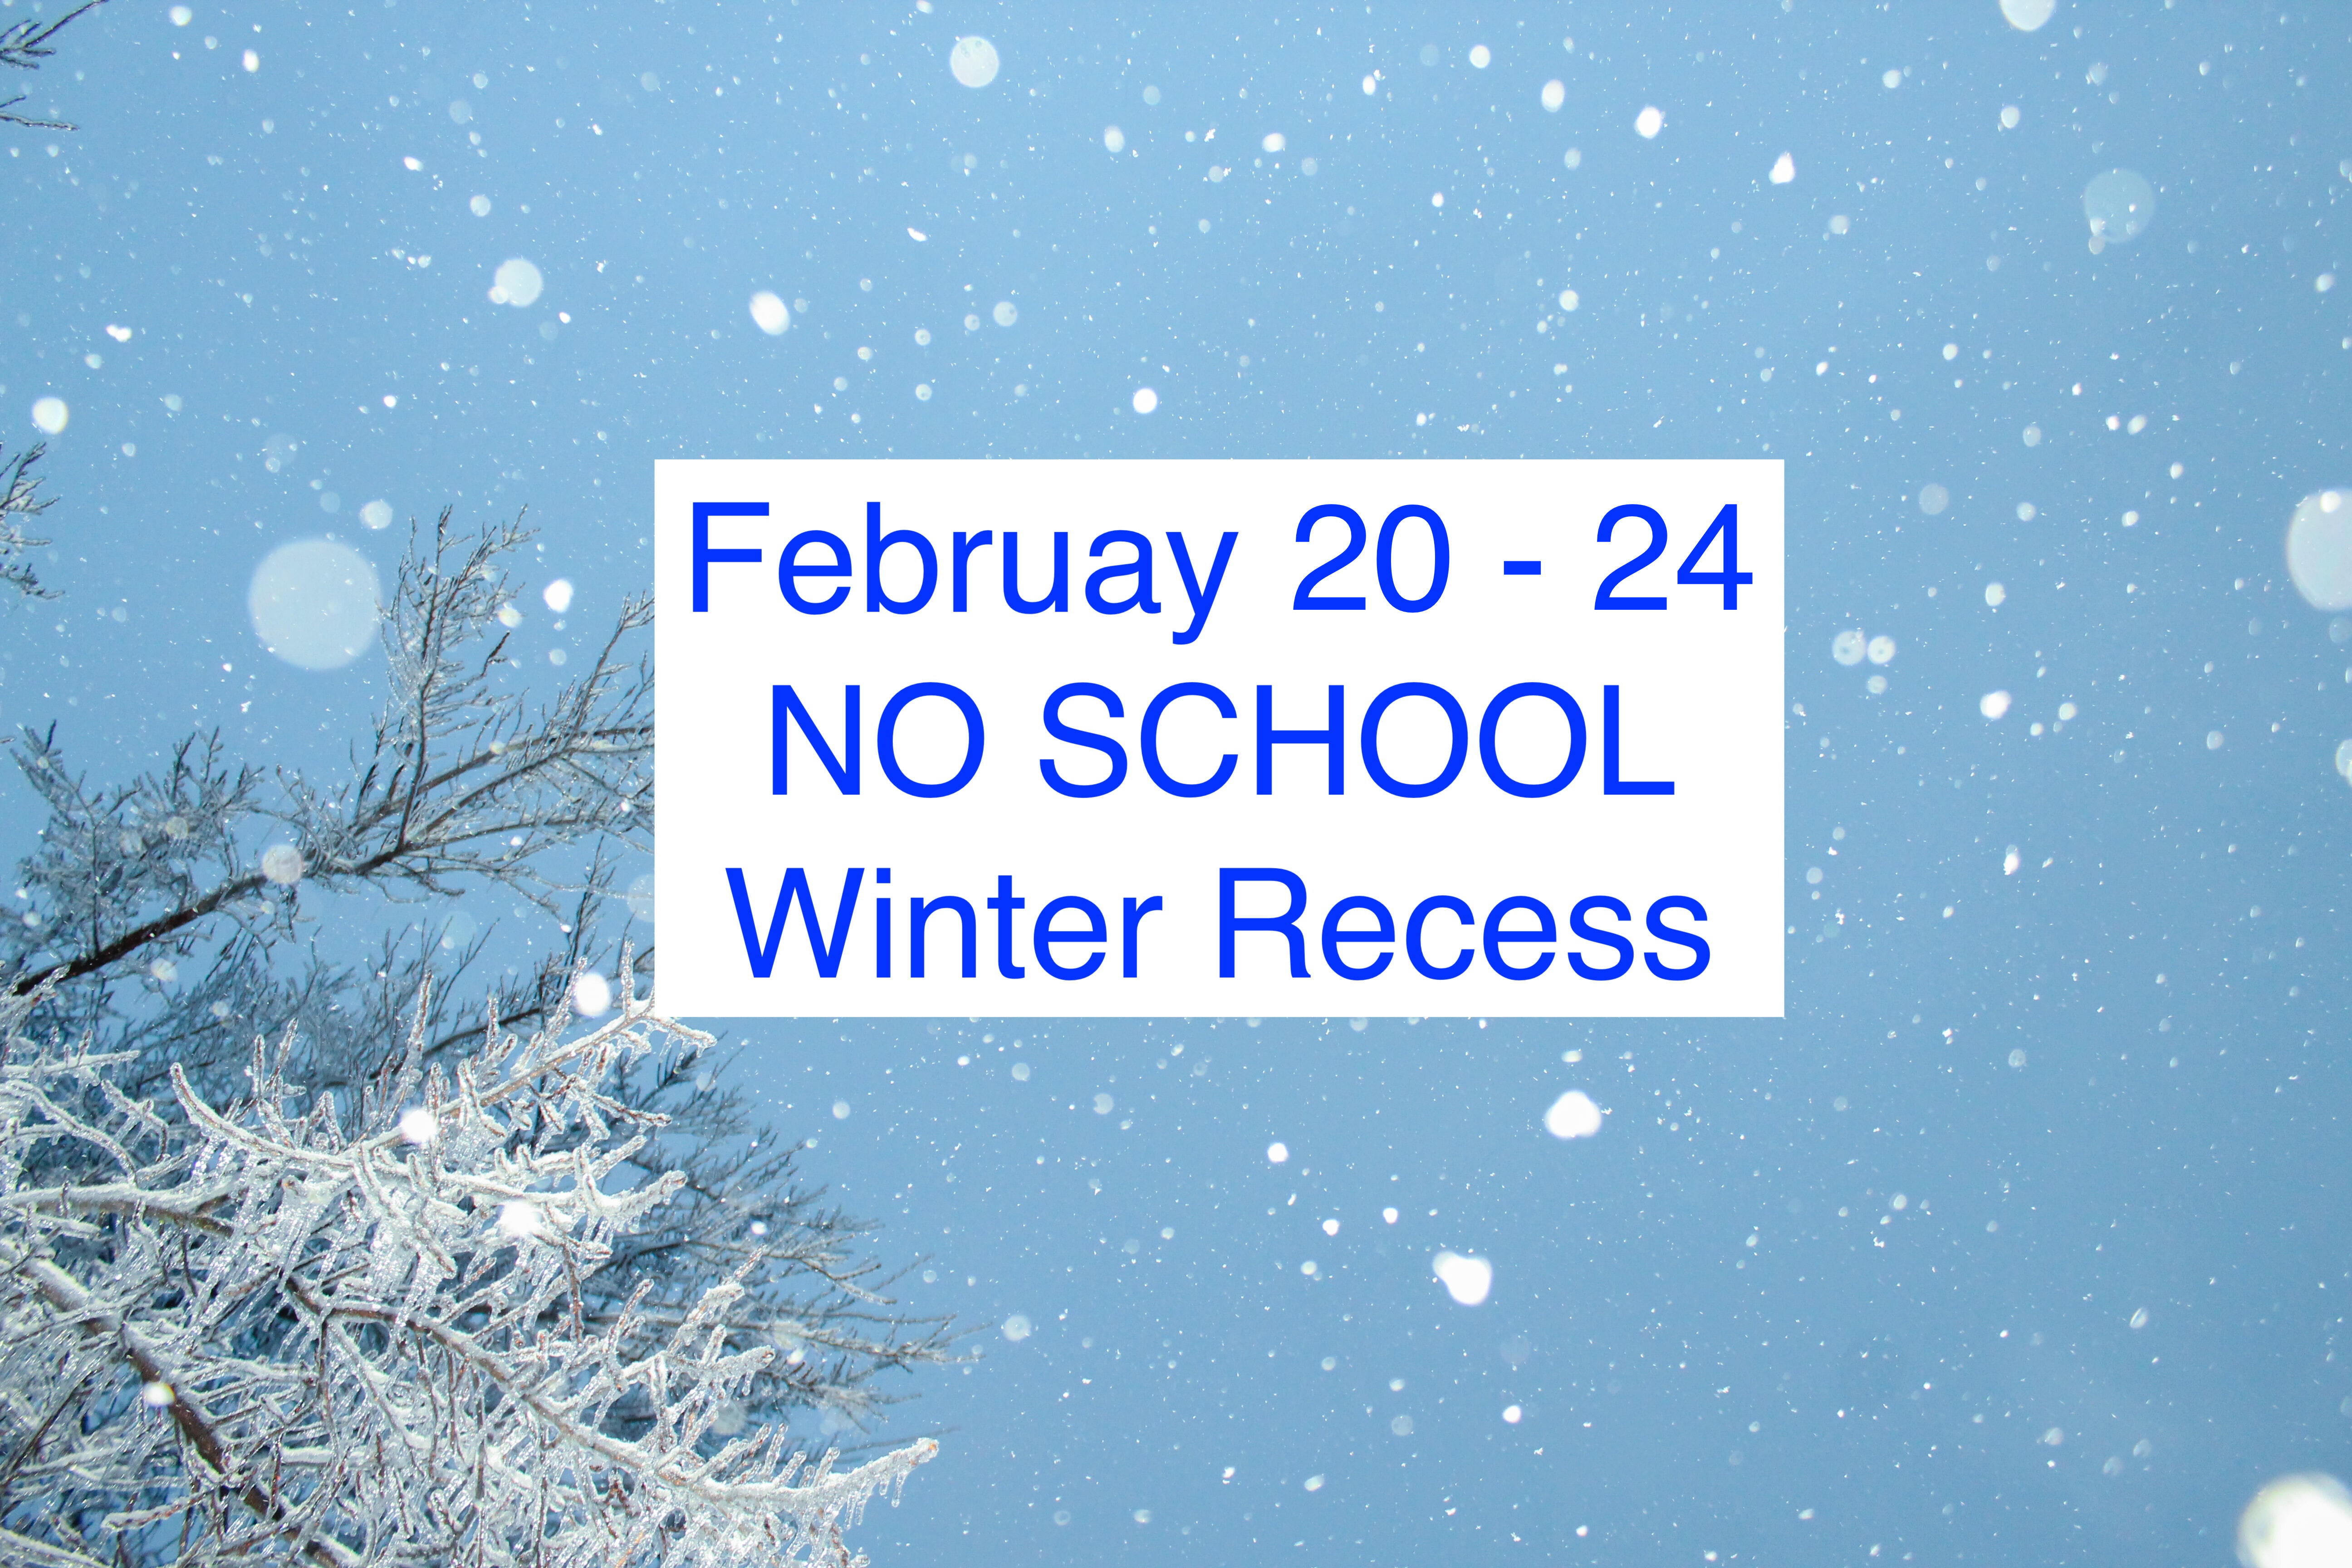 Winter recess Feb 20 through 24